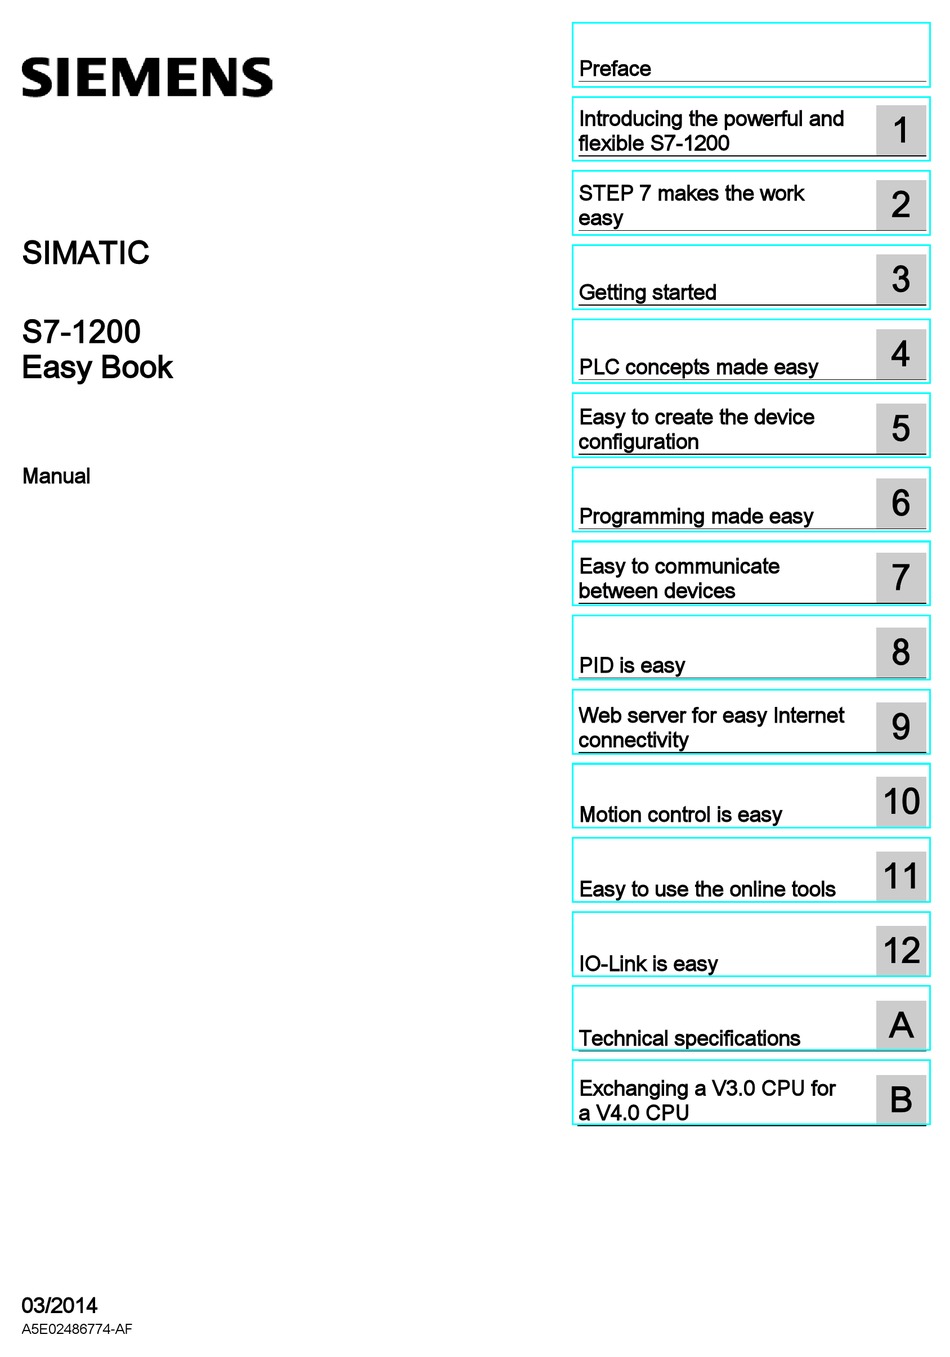 SIEMENS SIMATIC S7-1200 MANUAL Pdf Download | ManualsLib